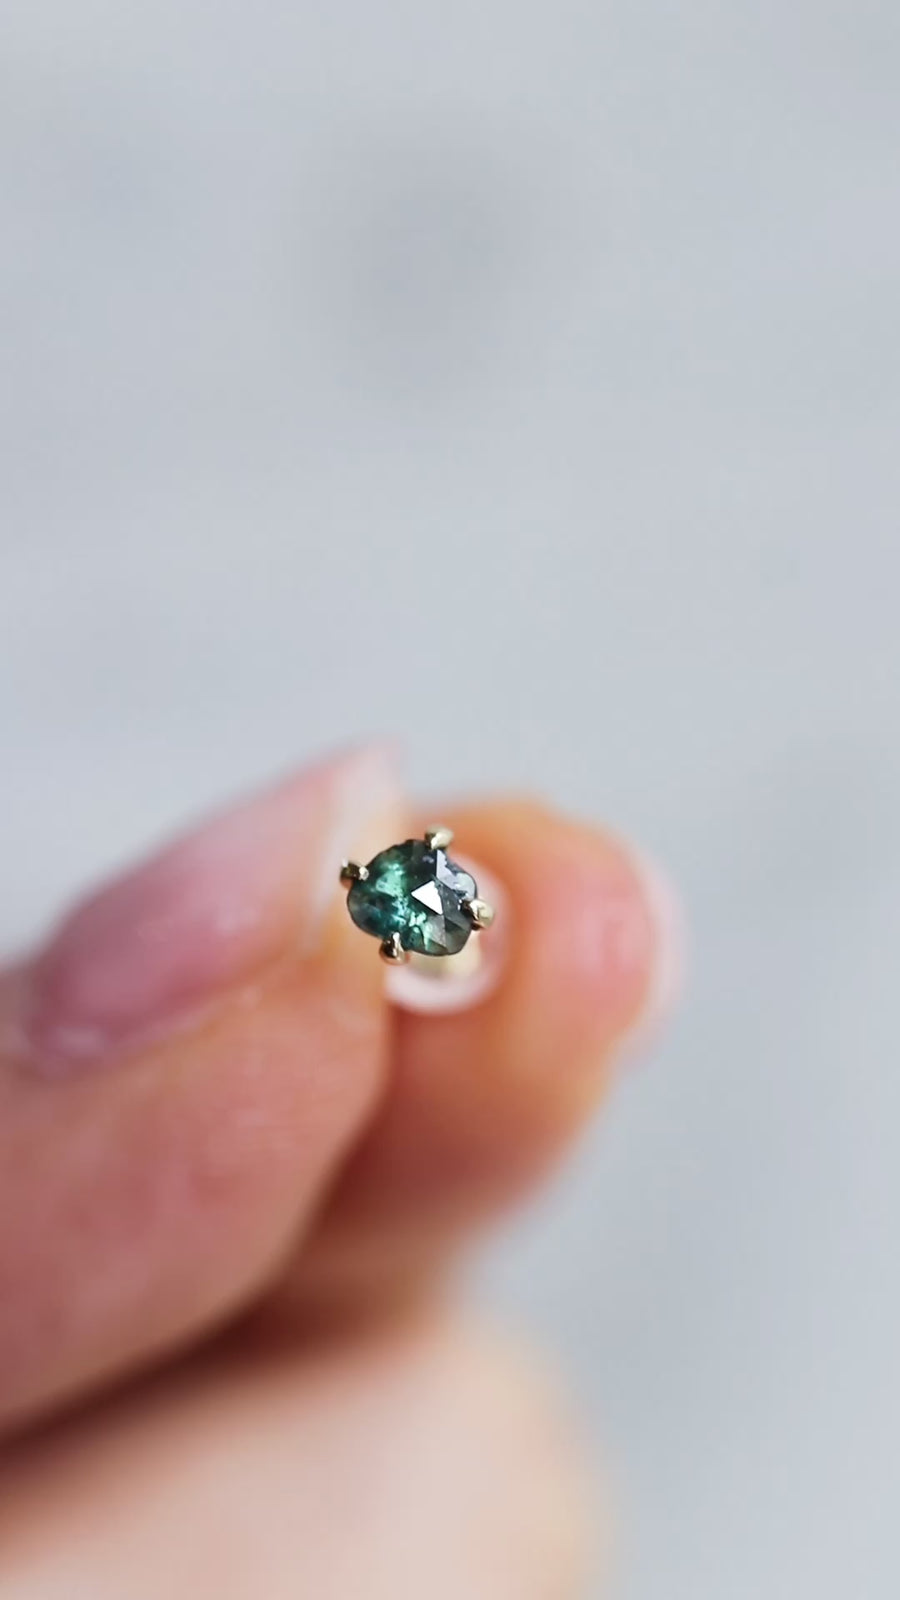 Prong Pierced Earring - Blue Diamond -